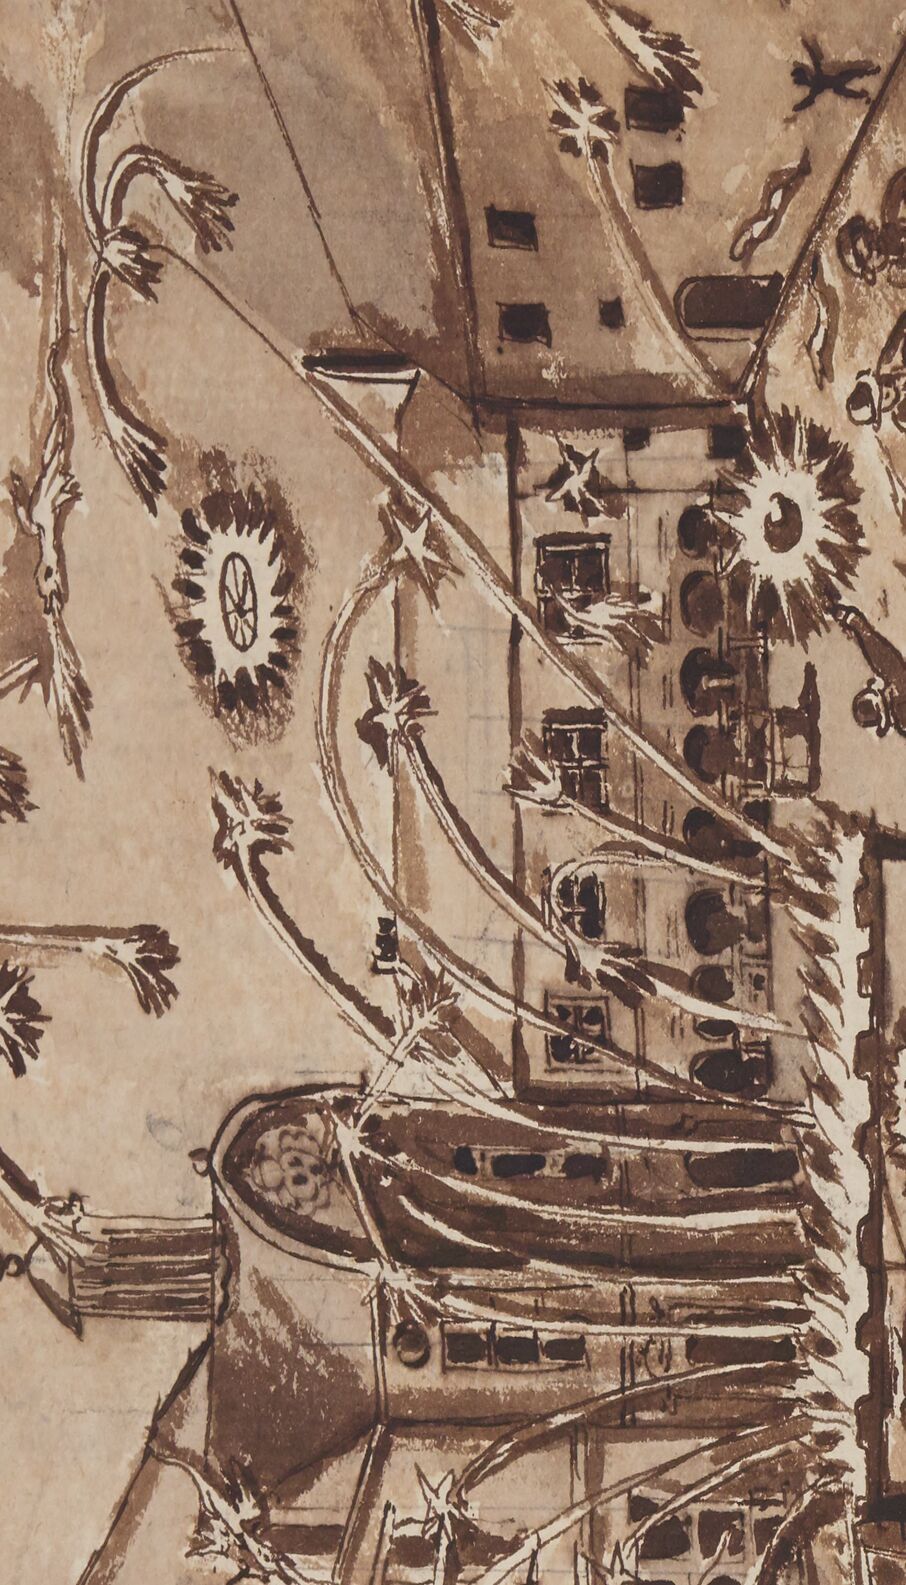 « Le discours de l'entrée (7 nov. 1613) de Messeigneurs le duc d'Espernon et marquis de La Vallette en la ville de Metz, avec les pourtraits des arcs triomphaux », par « D. Jacquet » (1614).